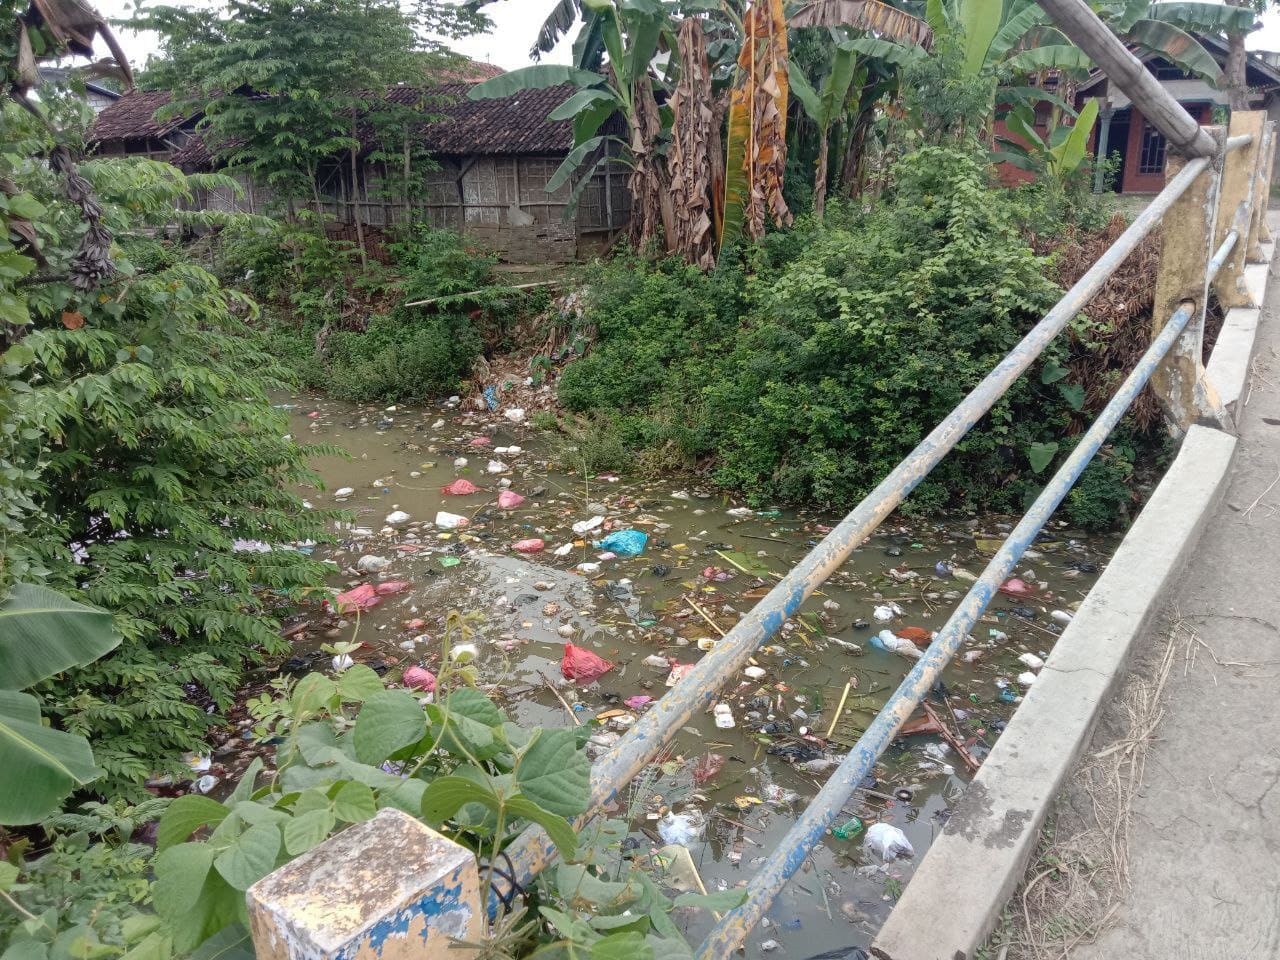 Sampah Masih Bersarang di Kali, Perda Pengelolaan Sampah Pati Belum Efektif